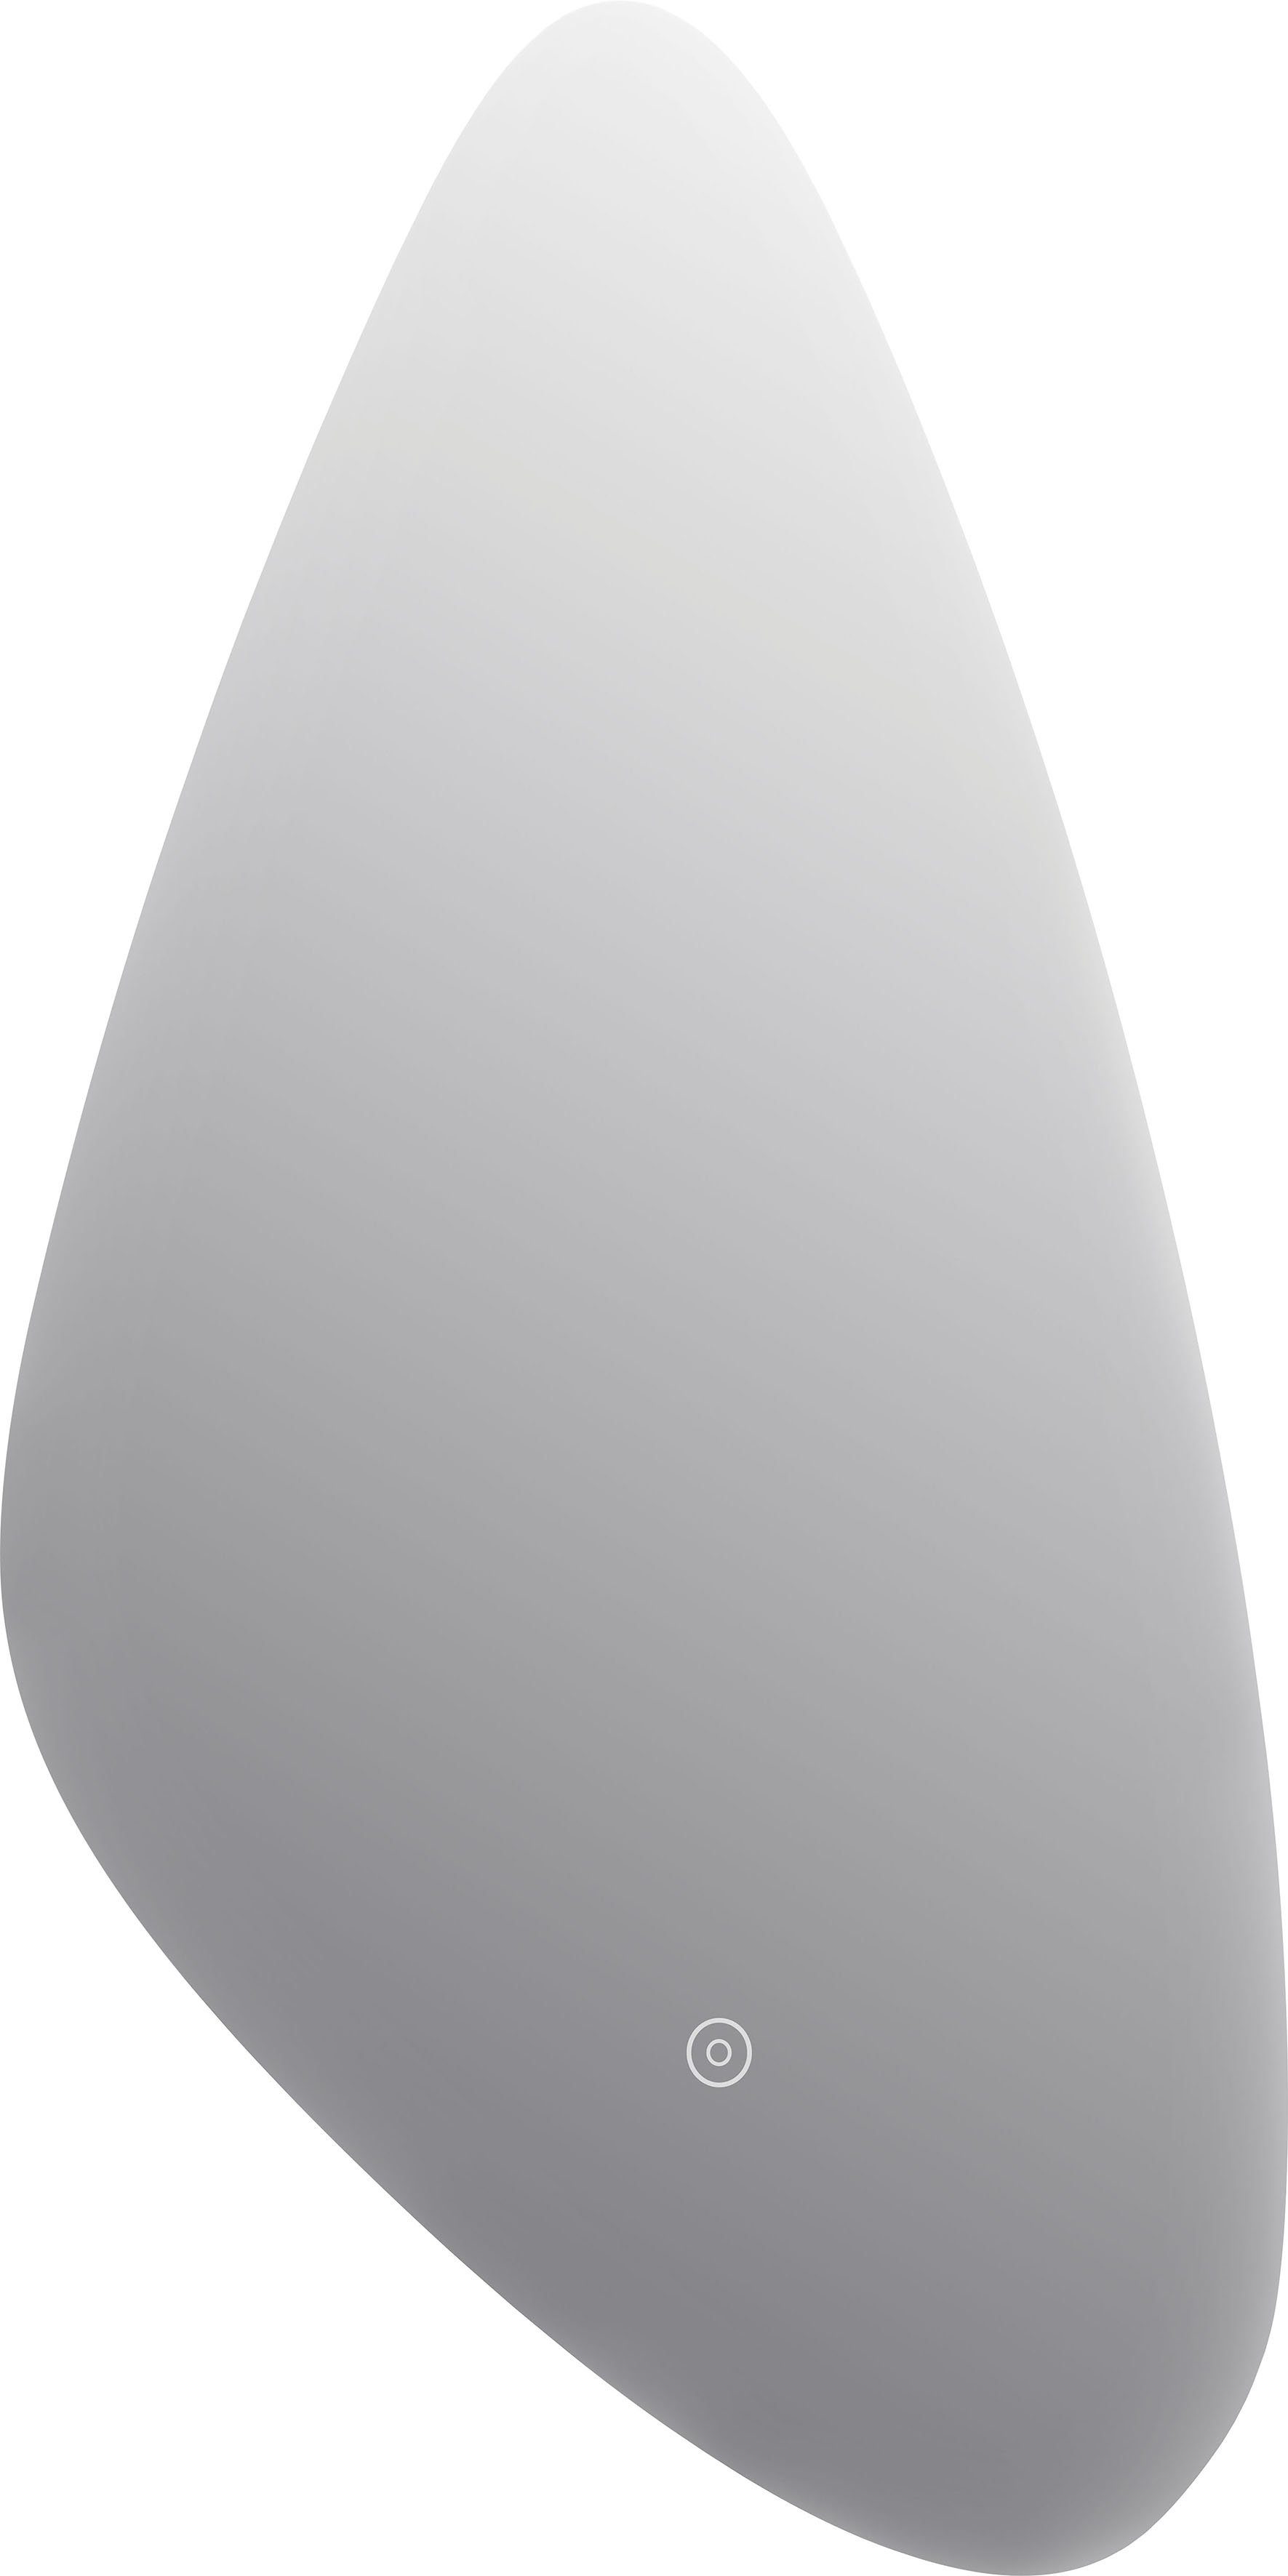 VEROSAN LED-Lichtspiegel PAMINA 40 x 76 cm, mit Touchsensor, dimmbar